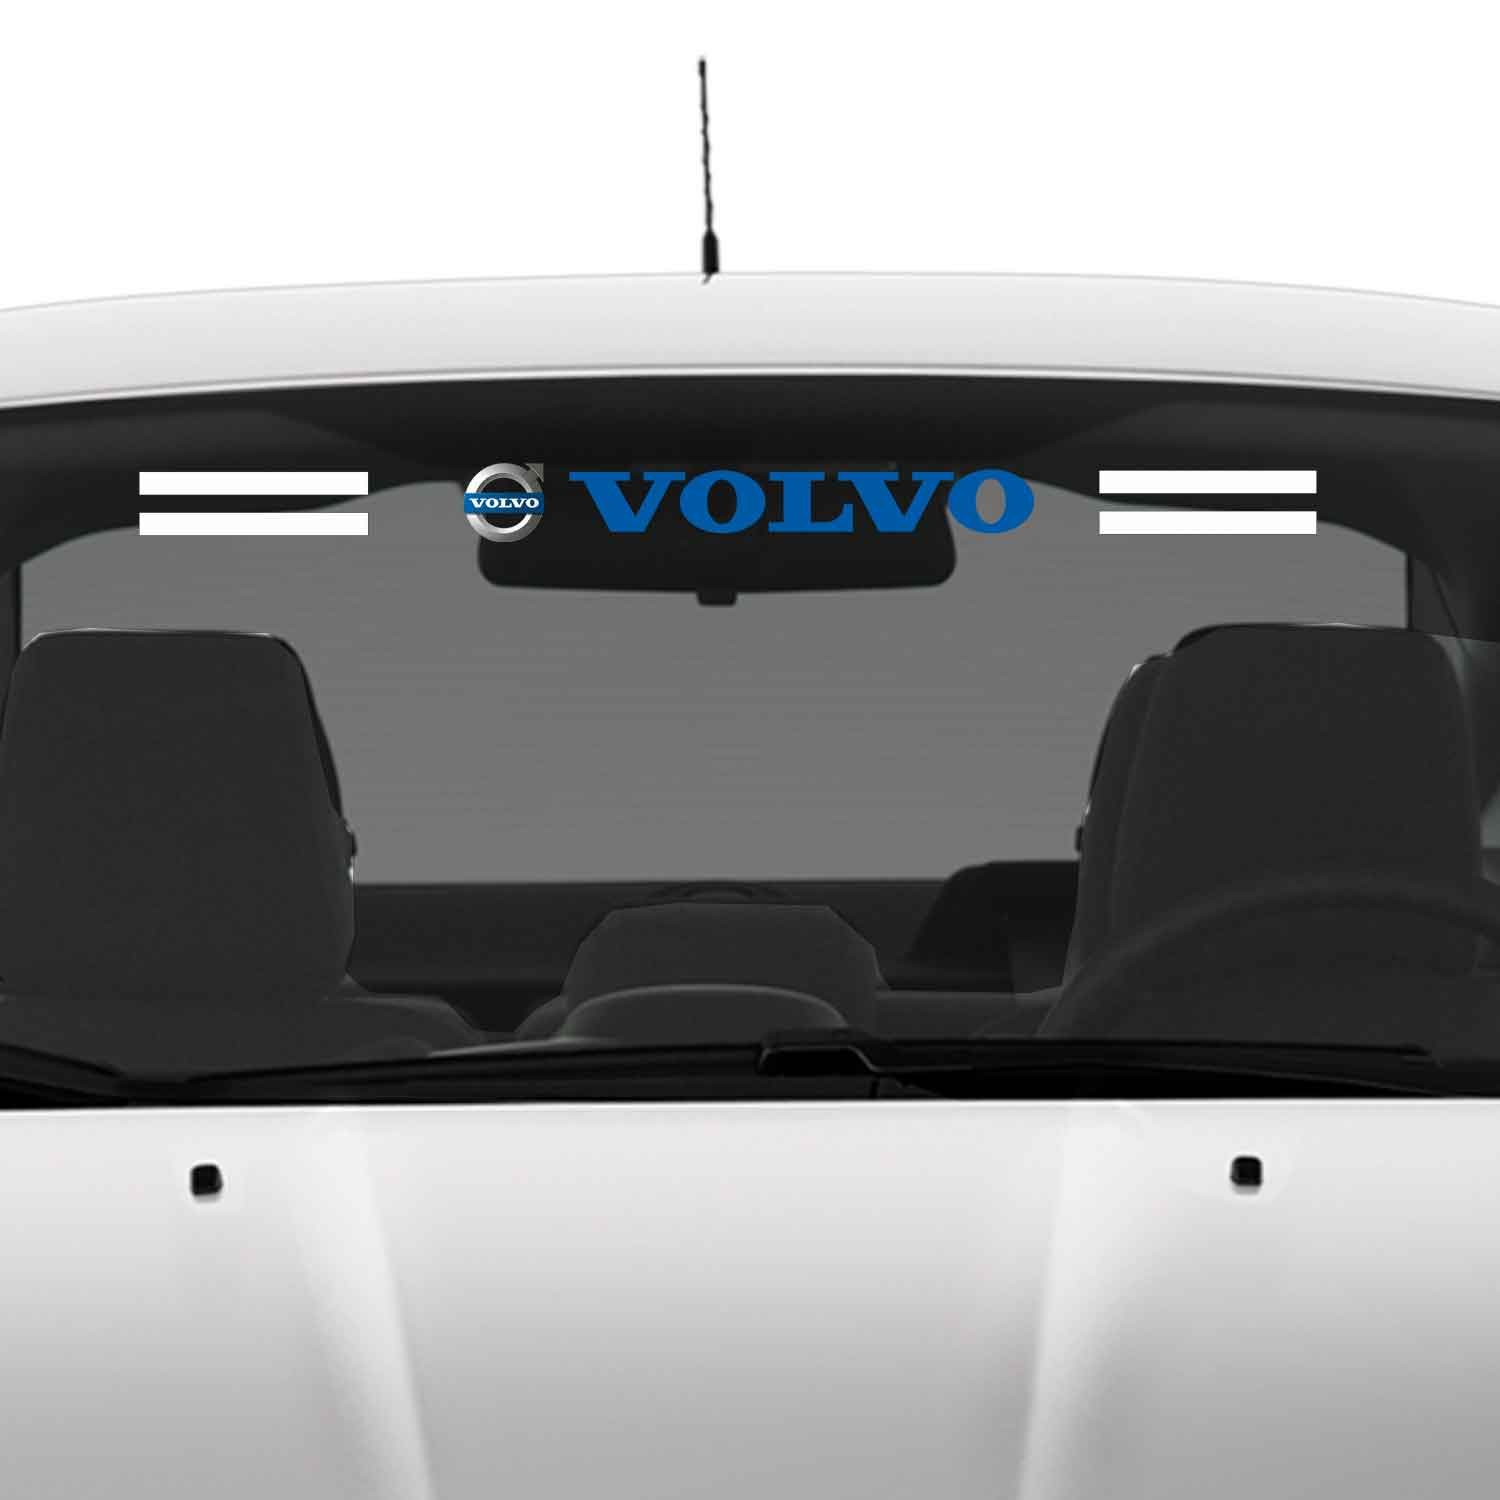 Volvo cam sticker - Volvo Ön Arka Cam Uyumlu Sticker